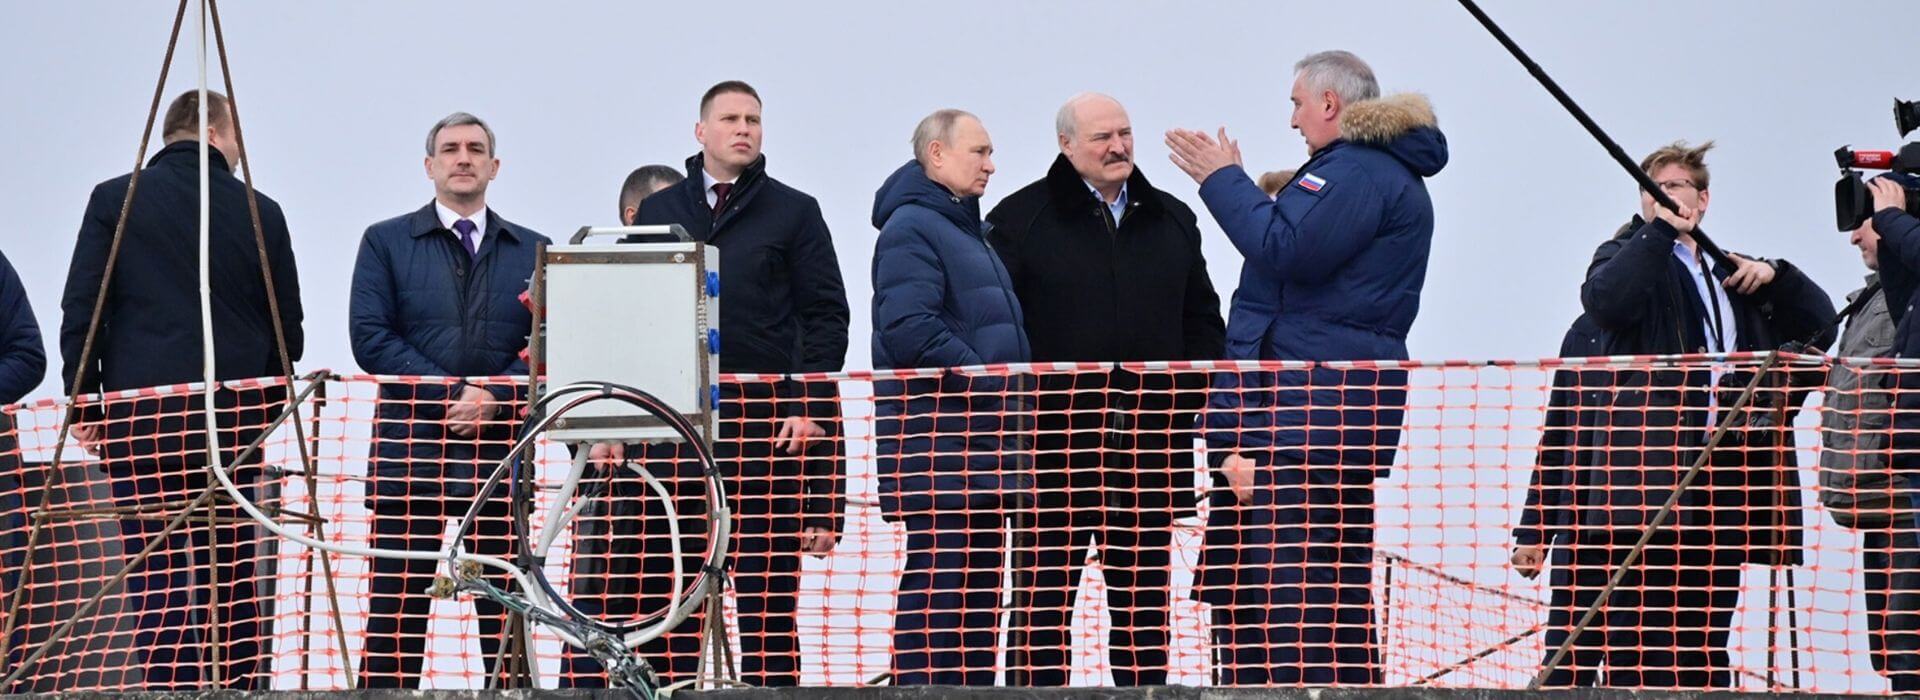 Судьба Лукашенко: в Гаагу или «как Назарбаев»? Надо делать выбор